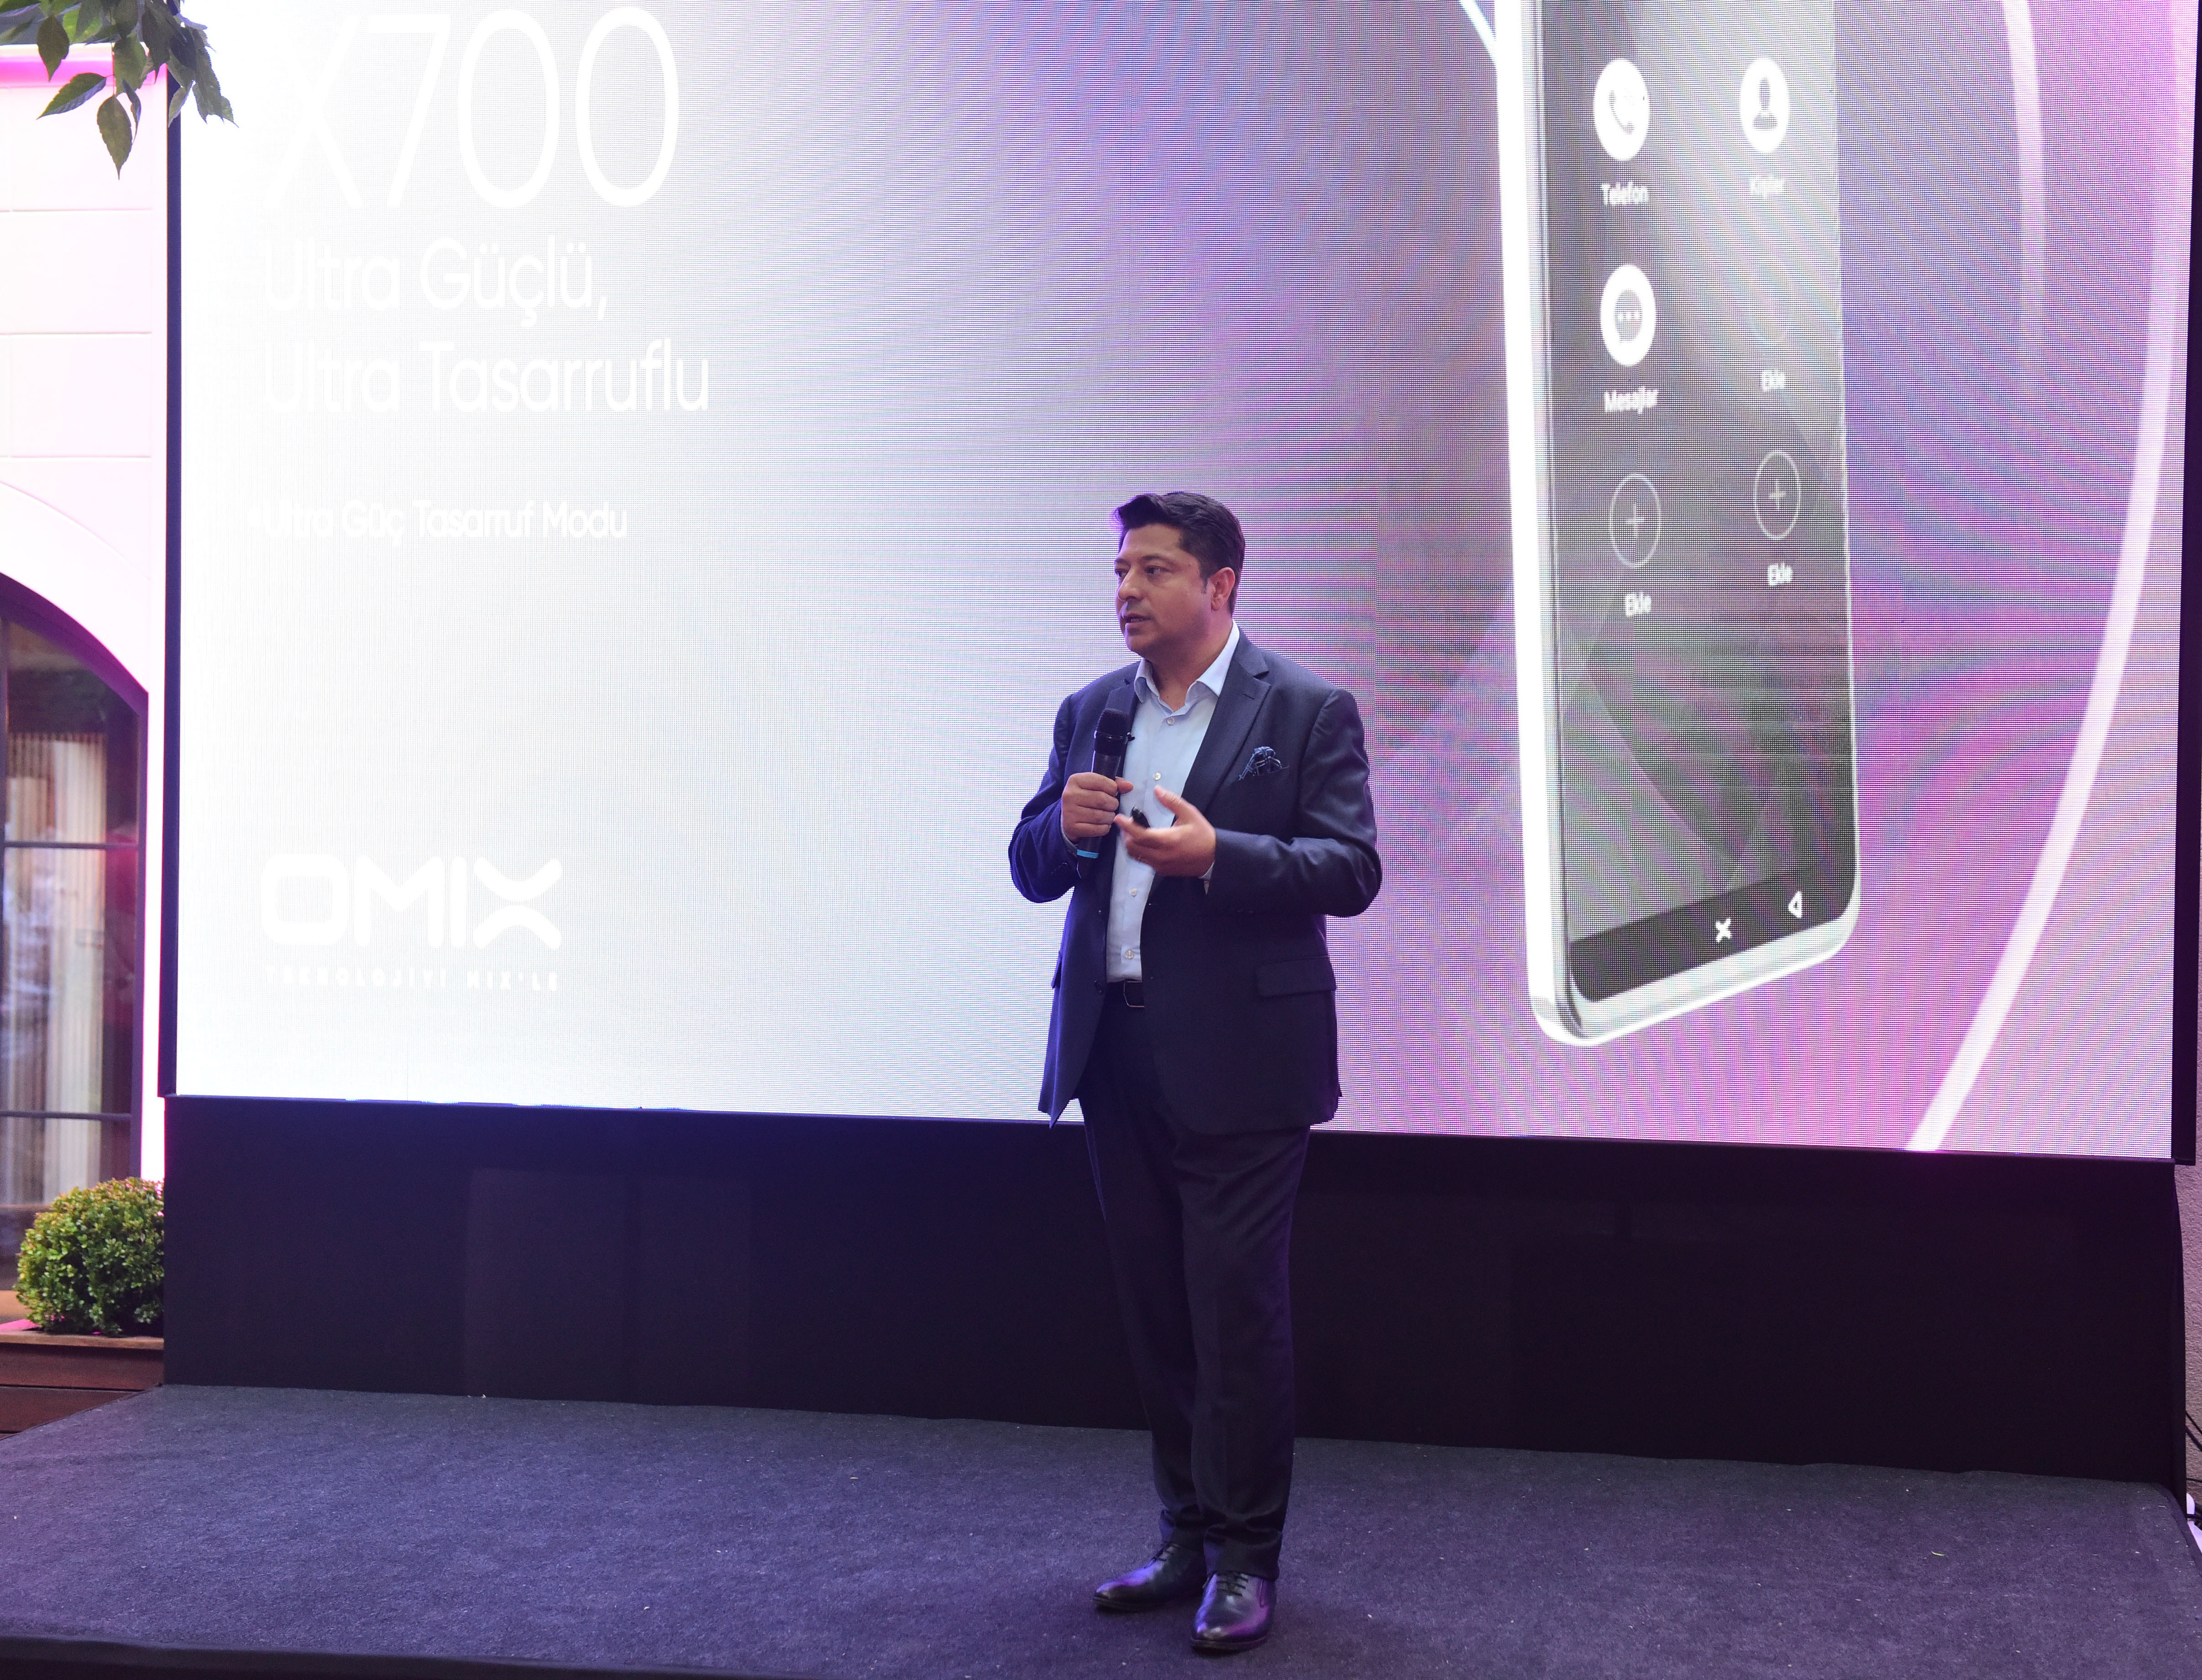 OMIX yeni telefonları X400, X600 ve X700'ü tanıttı